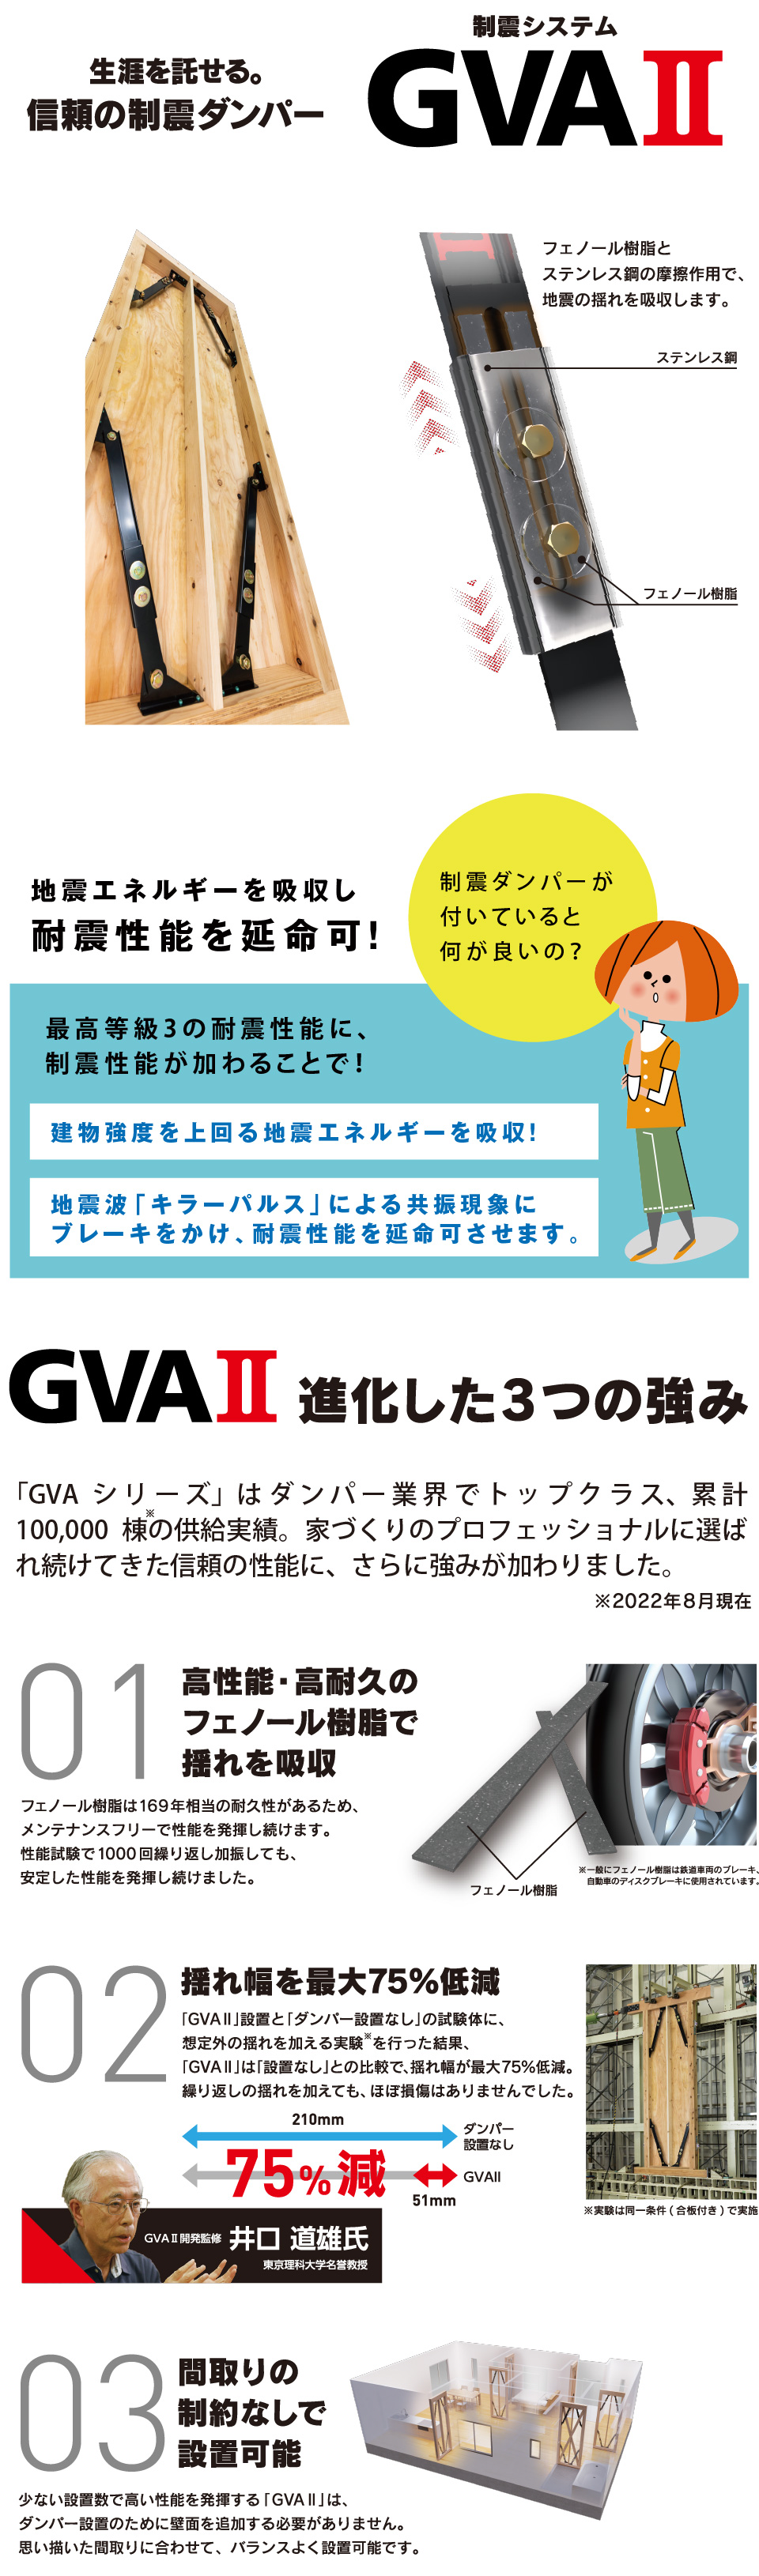 制震ダンパー「GVAⅡ」